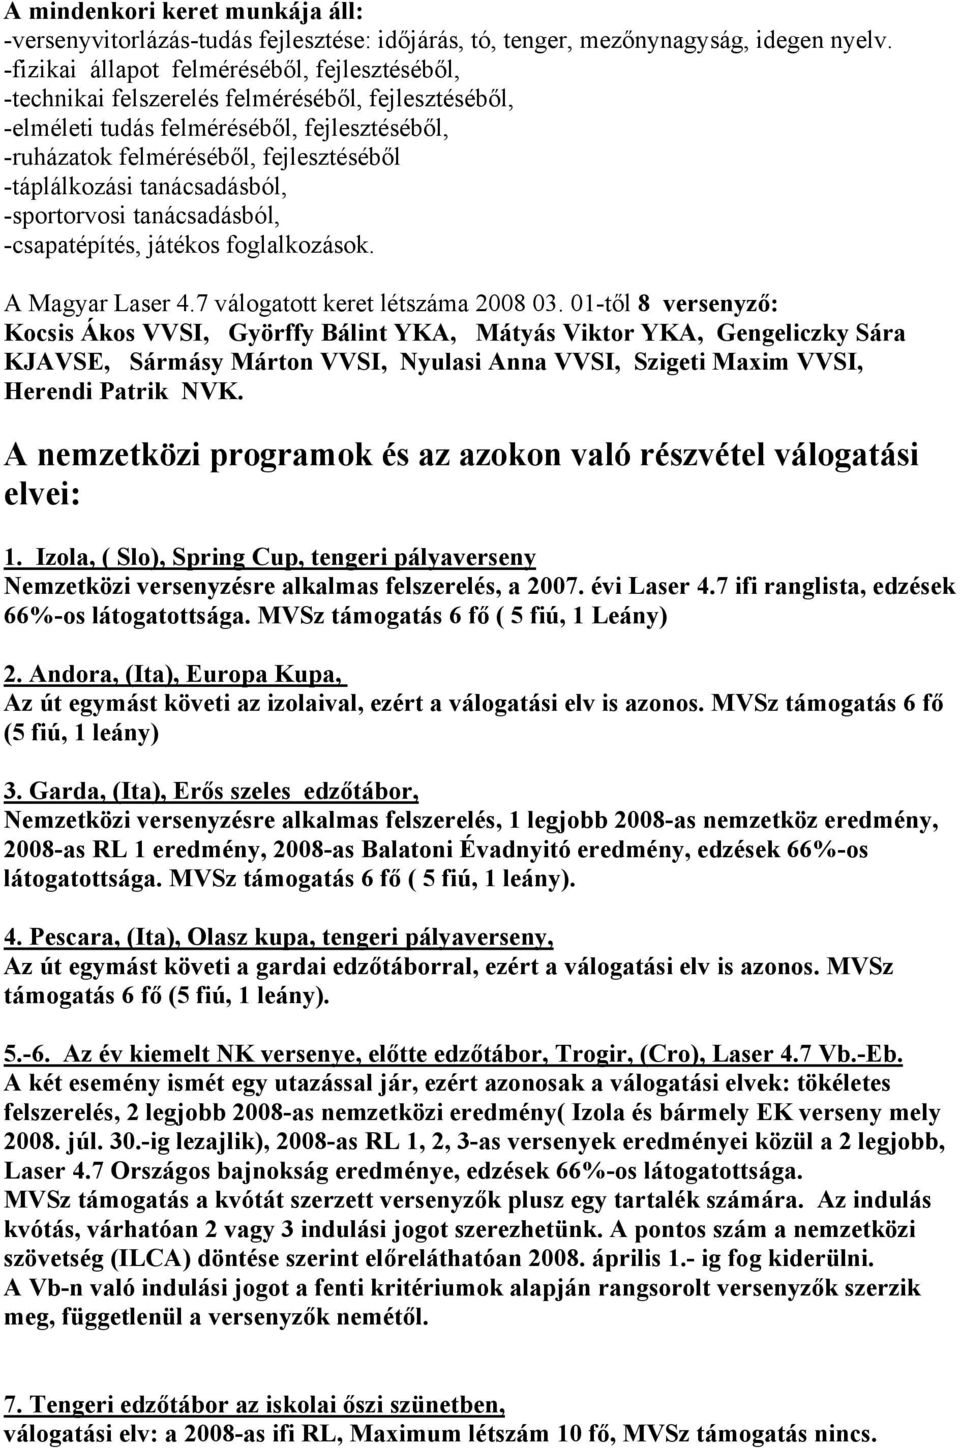 tanácsadásból, -sportorvosi tanácsadásból, -csapatépítés, játékos foglalkozások. A Magyar Laser 4.7 válogatott keret létszáma 2008 03.